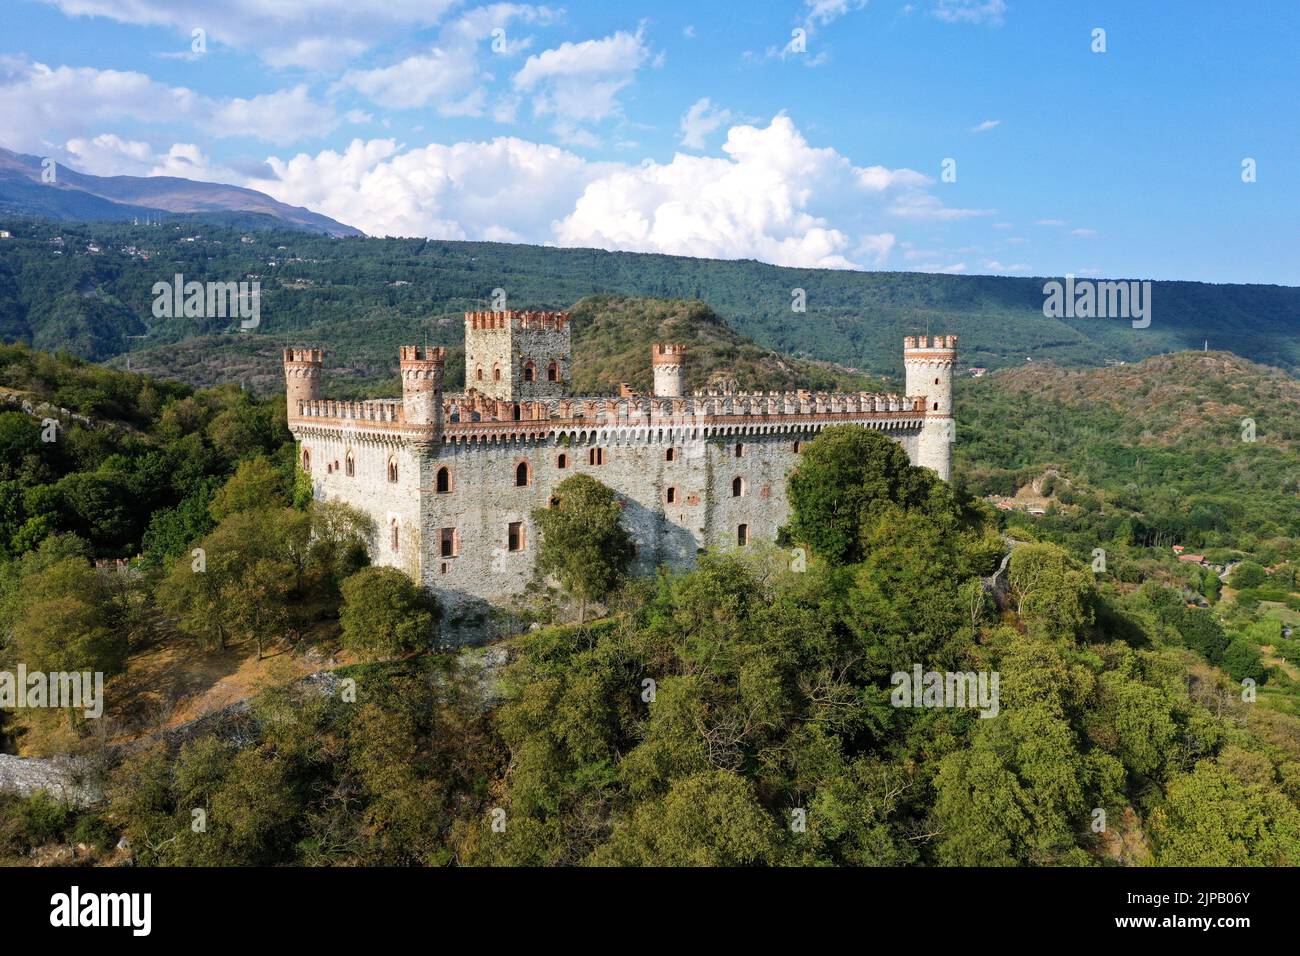 Die Burg von Montalto Dora, auf einer Höhe von 405 Metern, am Pistono-See, im moränischen Amphiteat. Montalto Dora, Turin, Italien Stockfoto